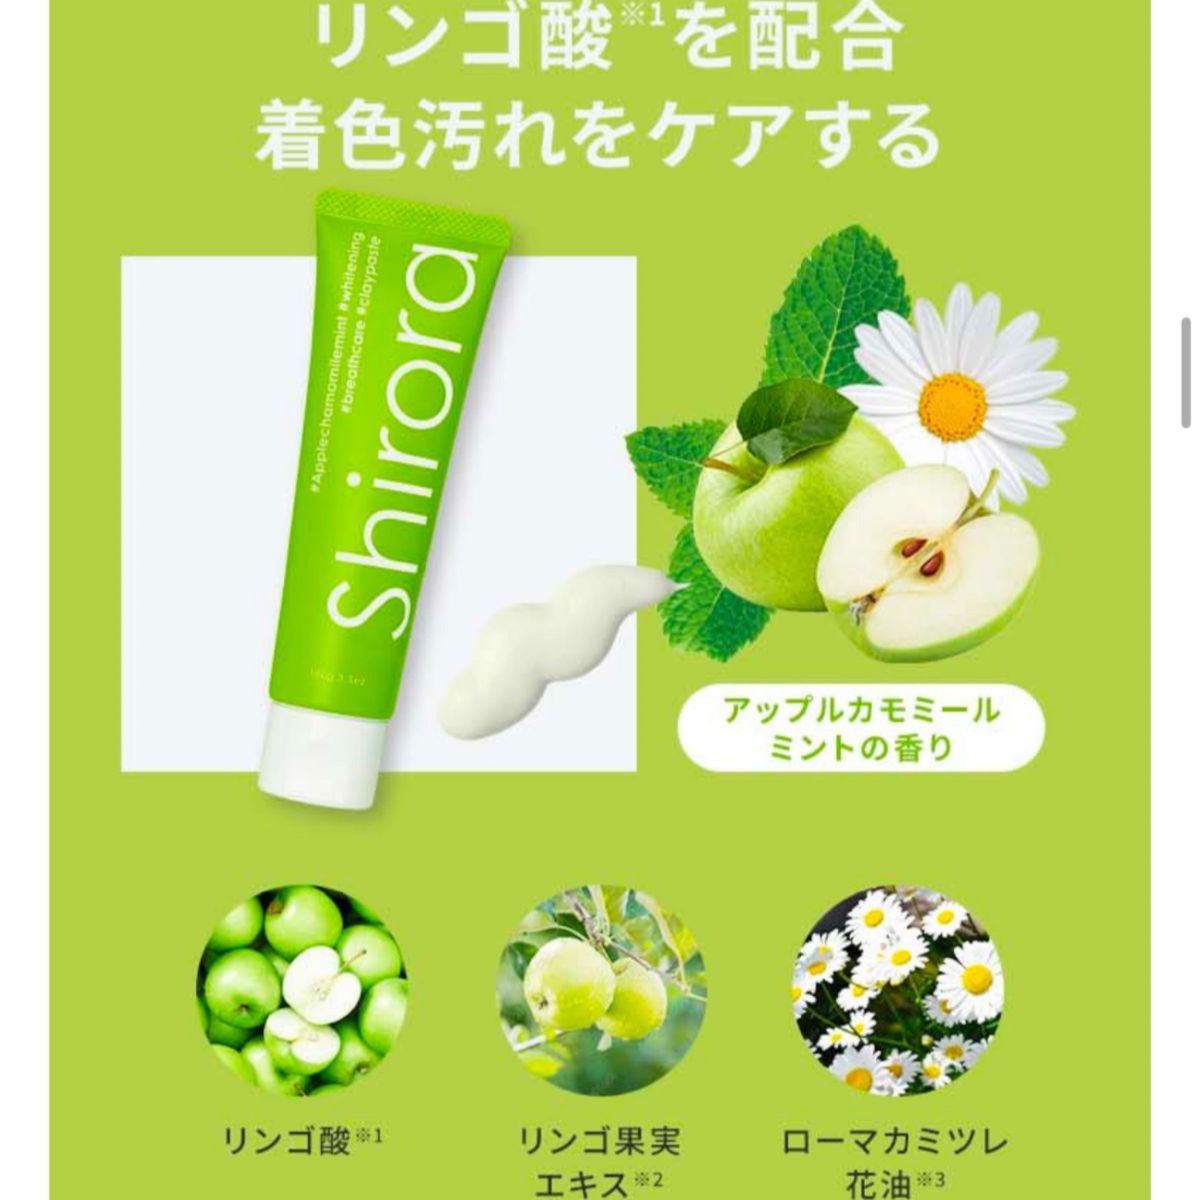 ホワイトニング 歯磨き粉 シローラ shirora クレイ アップルカモミール 100g フッ素 なし 研磨剤 フリー